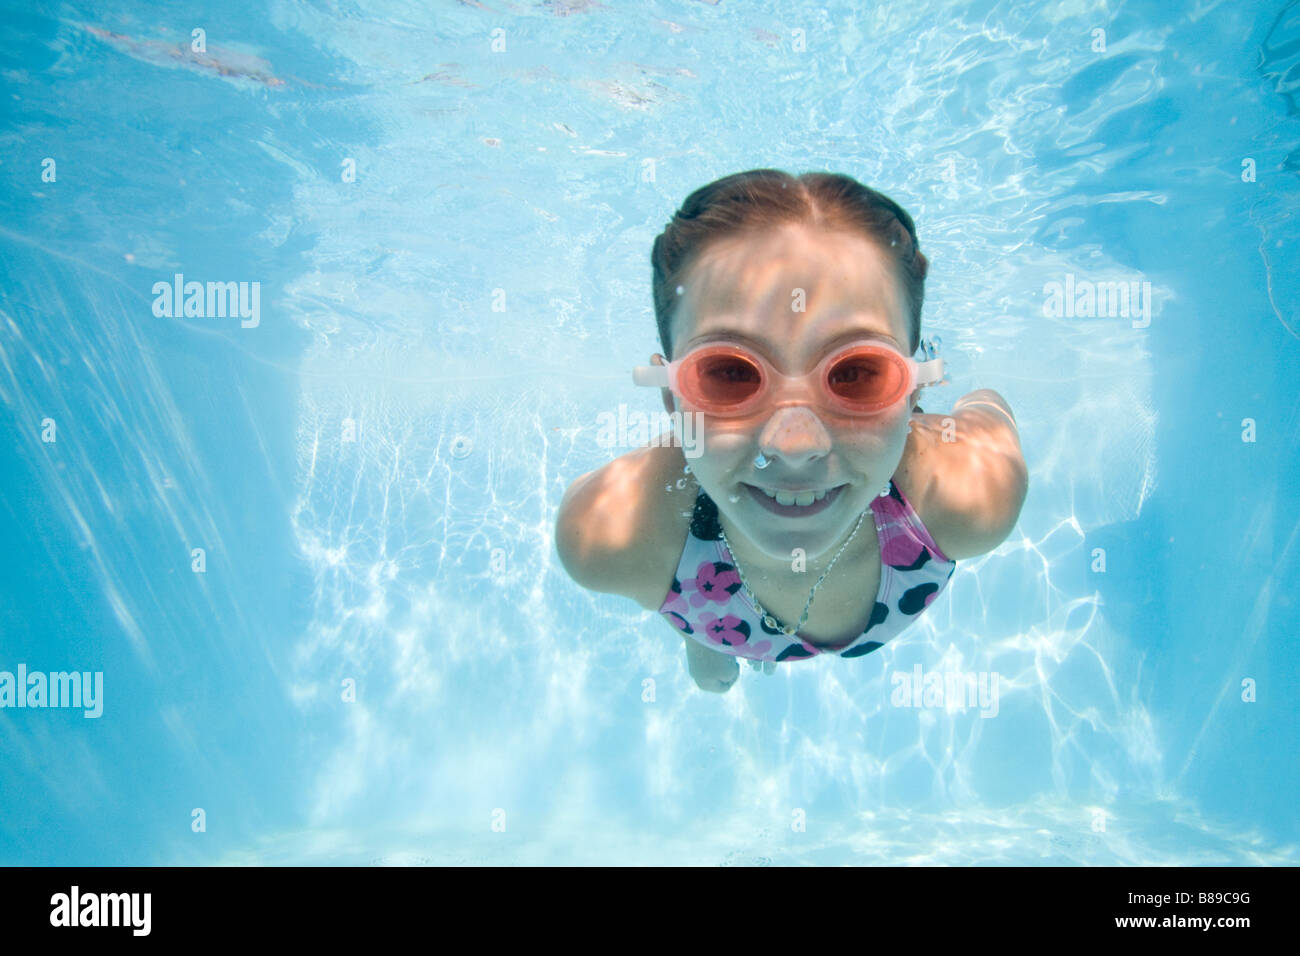 girl swimming underwater Stock Photo